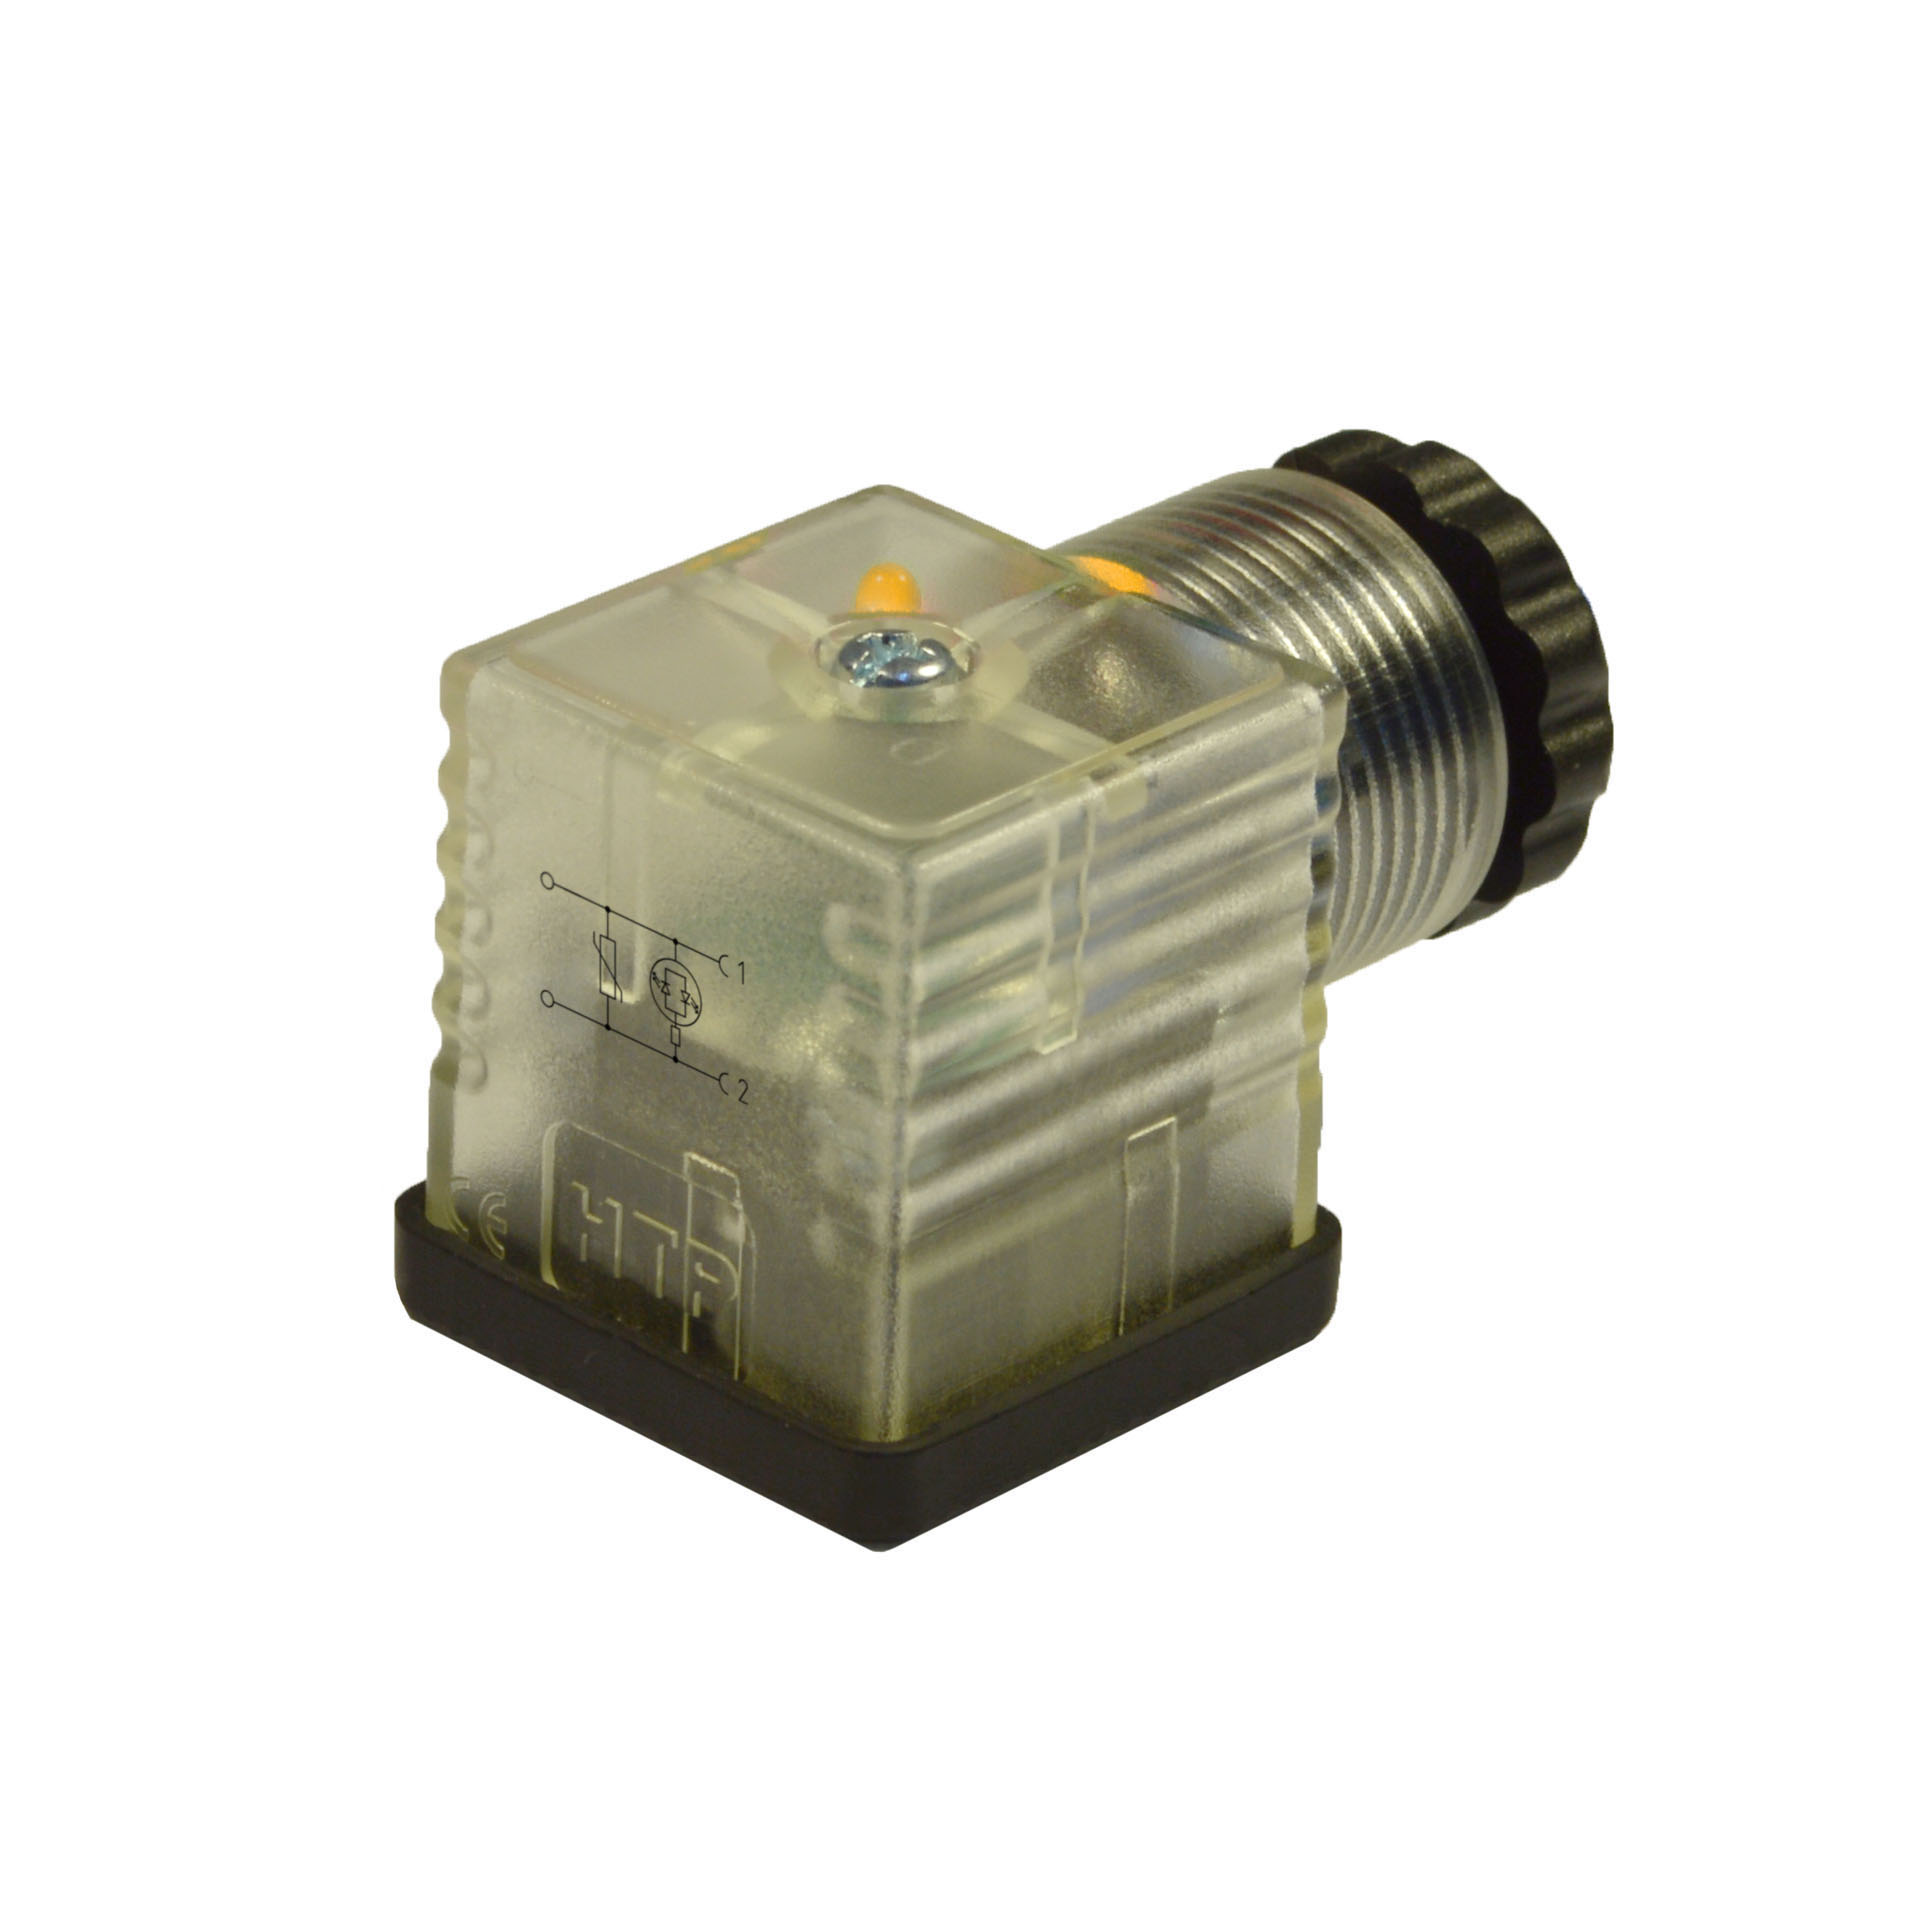 EN175301-803/A a cablare,2p+T(h.12),LED giallo+vdr,230VAC/DC,PG9/11unif.